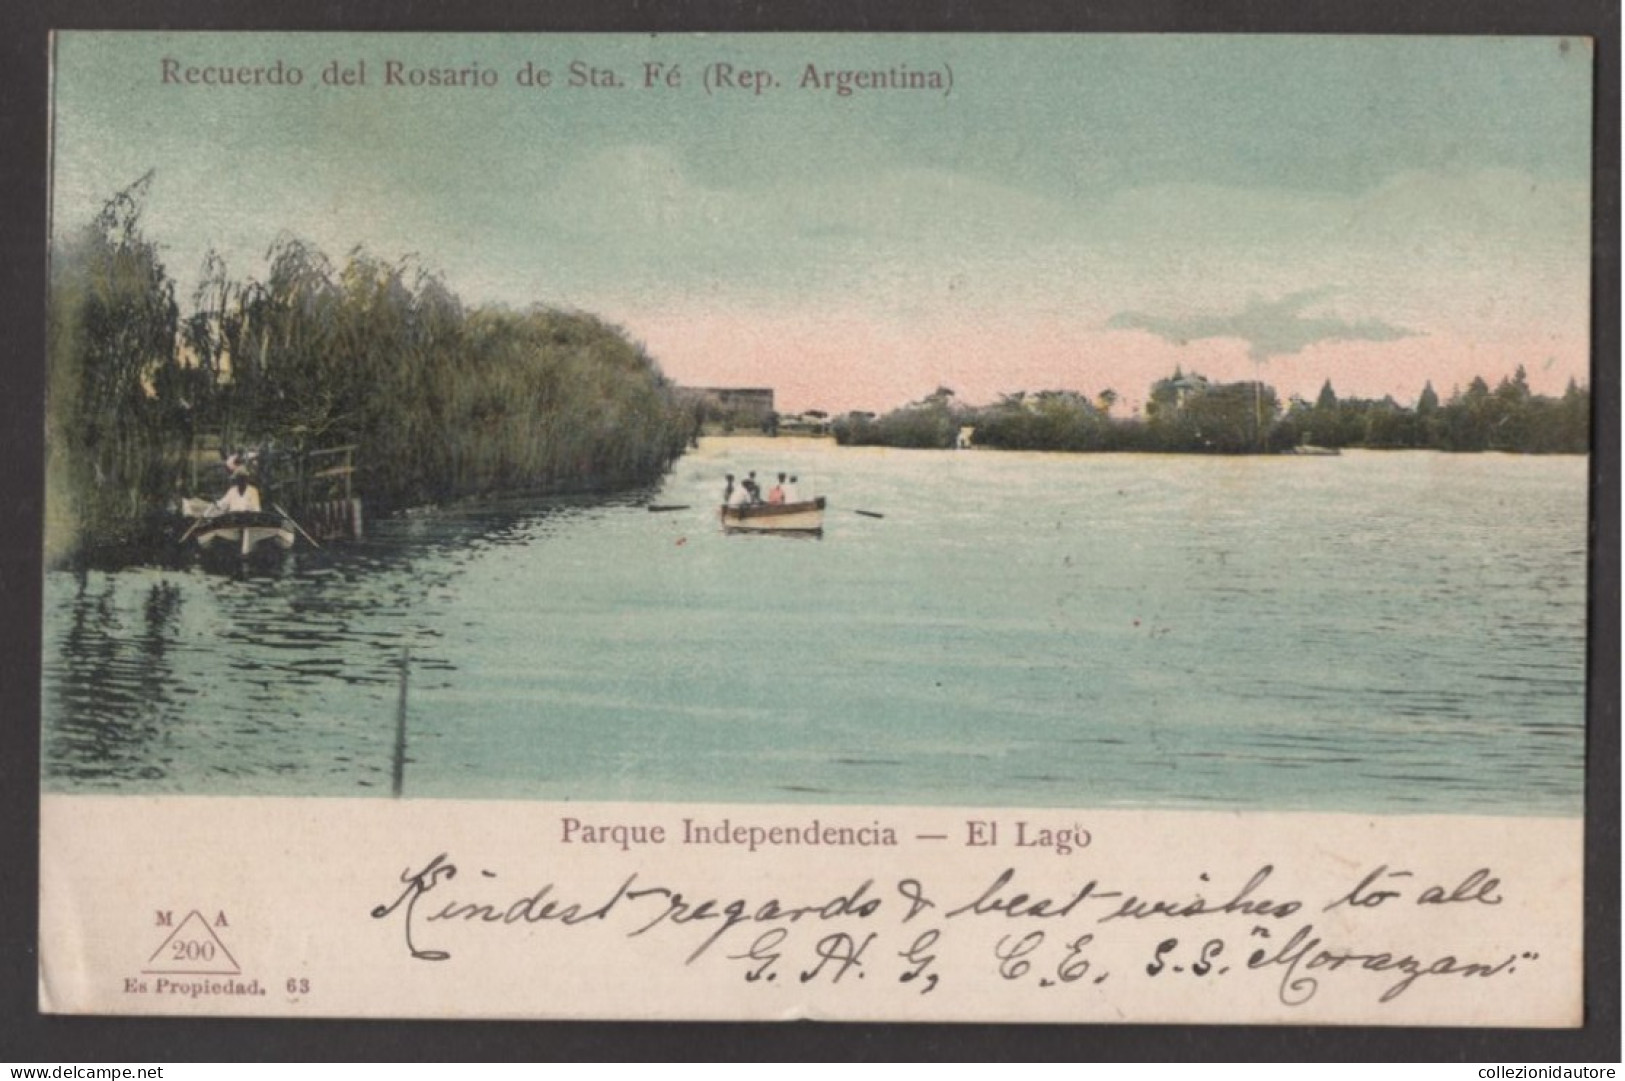 RECUERDO DEL ROSARIO DE STA. FÉ - PARQUE INDEPENDENCIA - EL LAGO - IMBARCAZIONI ANIMATA - CARTOLINA FP SPEDITA NEL 1906 - Argentine